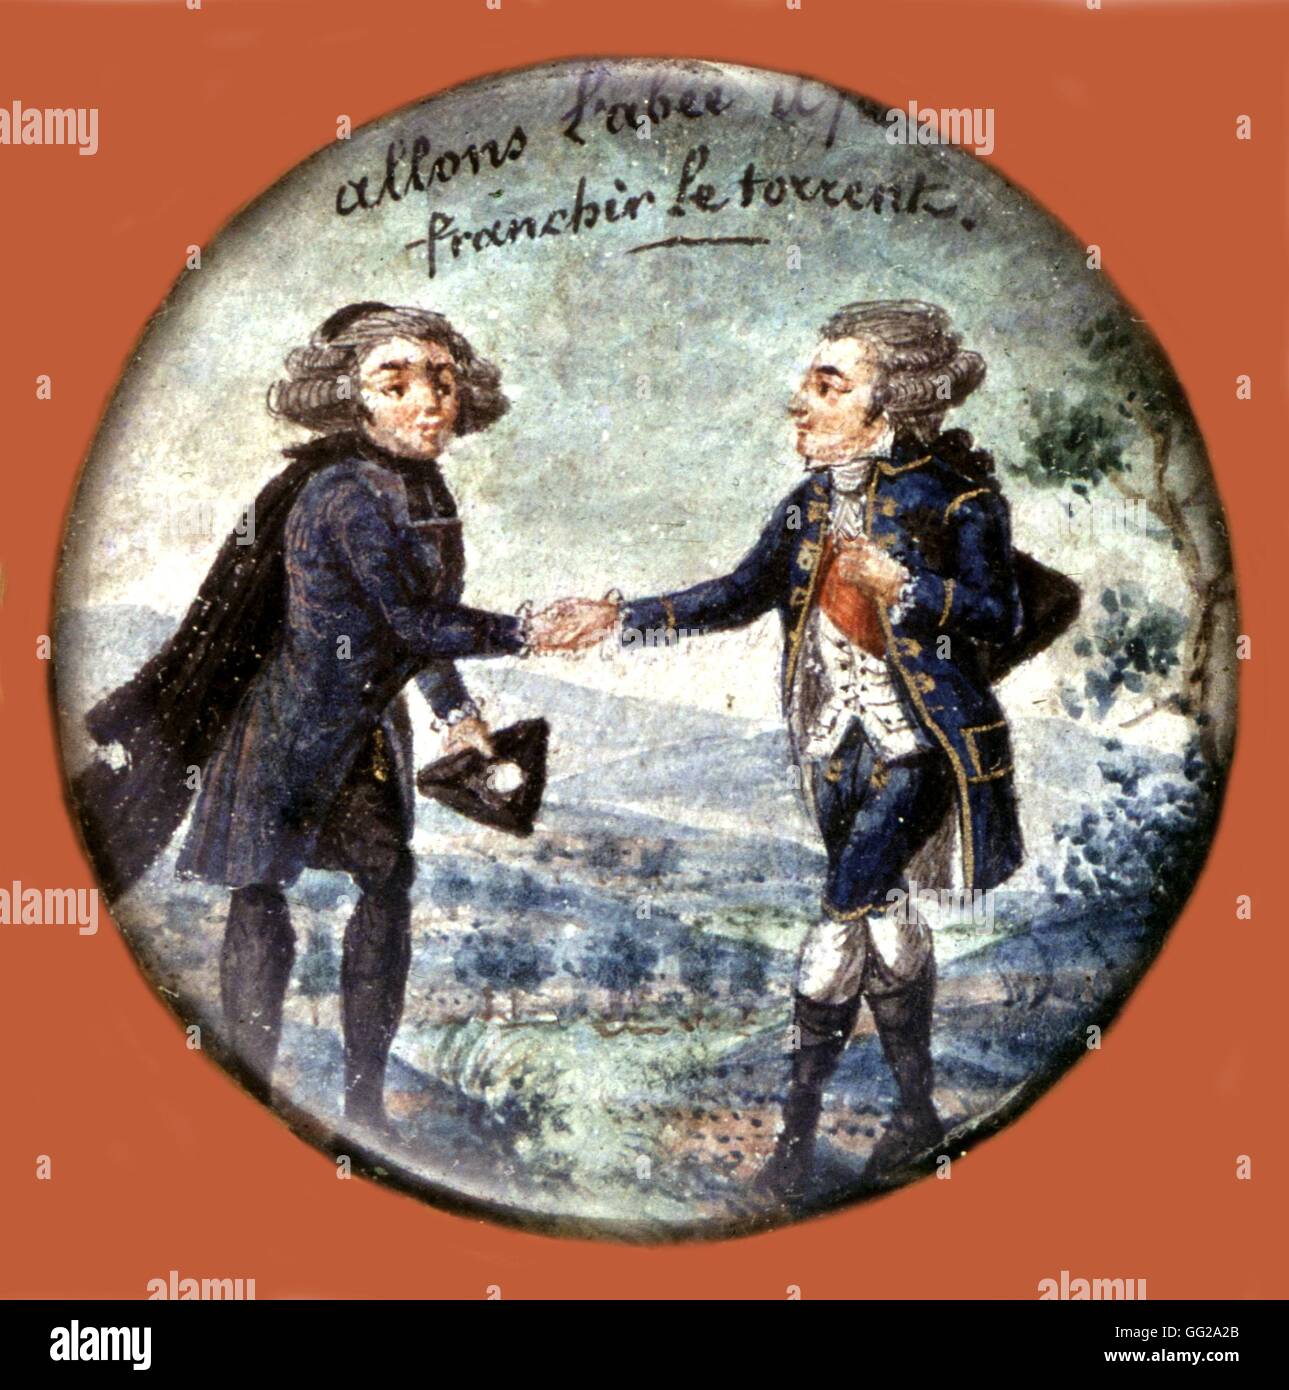 Farbige revolutionär print. Allegorie auf den dritten Stand, Eqaulity der drei Aufträge aus dem 18. Jahrhundert Frankreich, französische Revolution von 1789 Stockfoto